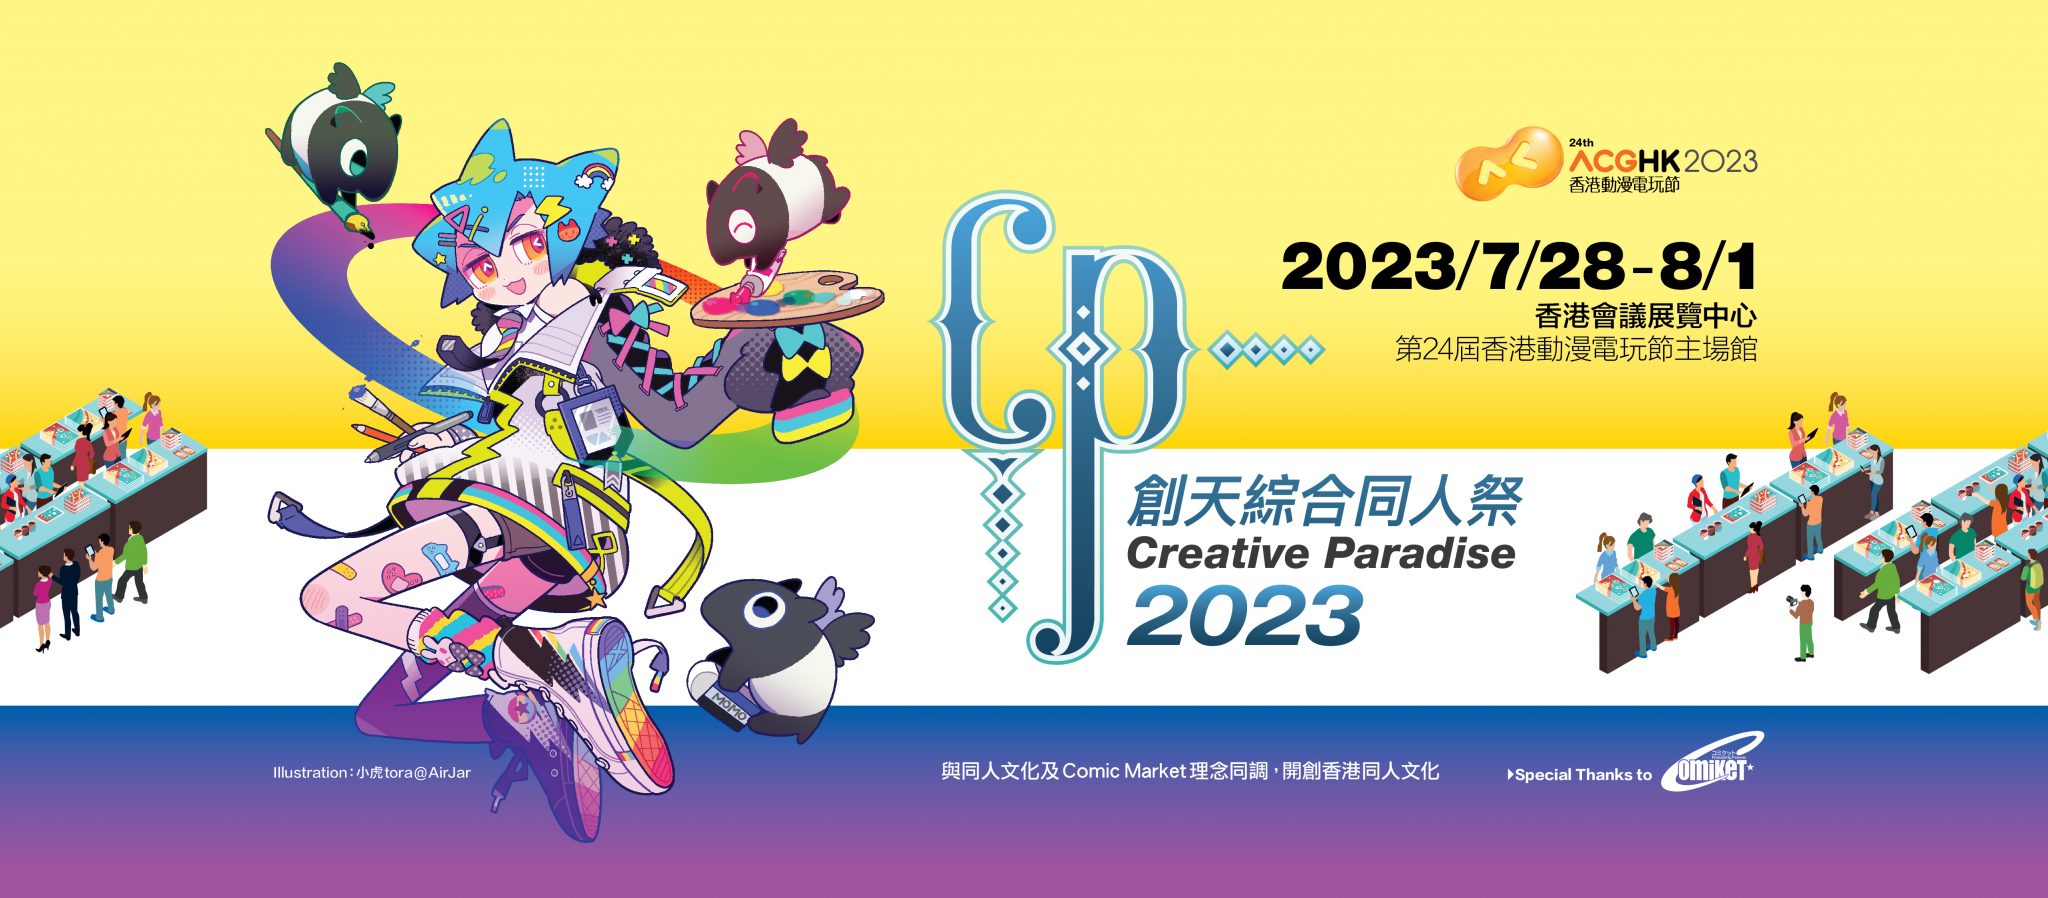 【ZA Bank】動漫節2023 | 門票/開放時間/時間表/Cosplay登記